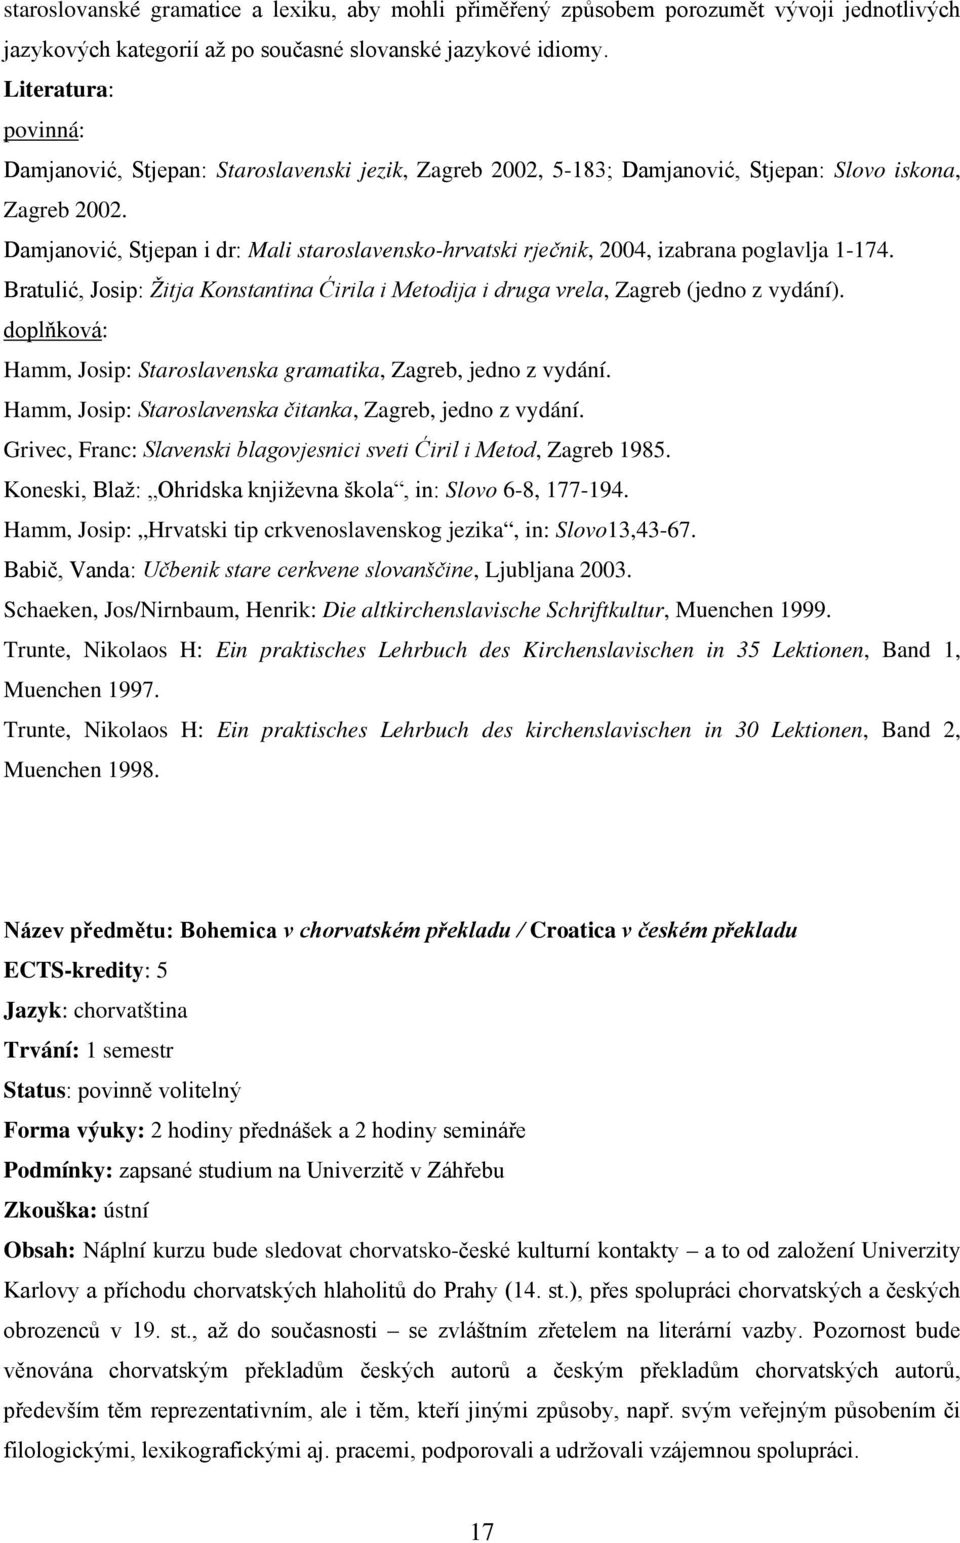 Damjanović, Stjepan i dr: Mali staroslavensko-hrvatski rječnik, 2004, izabrana poglavlja 1-174. Bratulić, Josip: Žitja Konstantina Ćirila i Metodija i druga vrela, Zagreb (jedno z vydání).